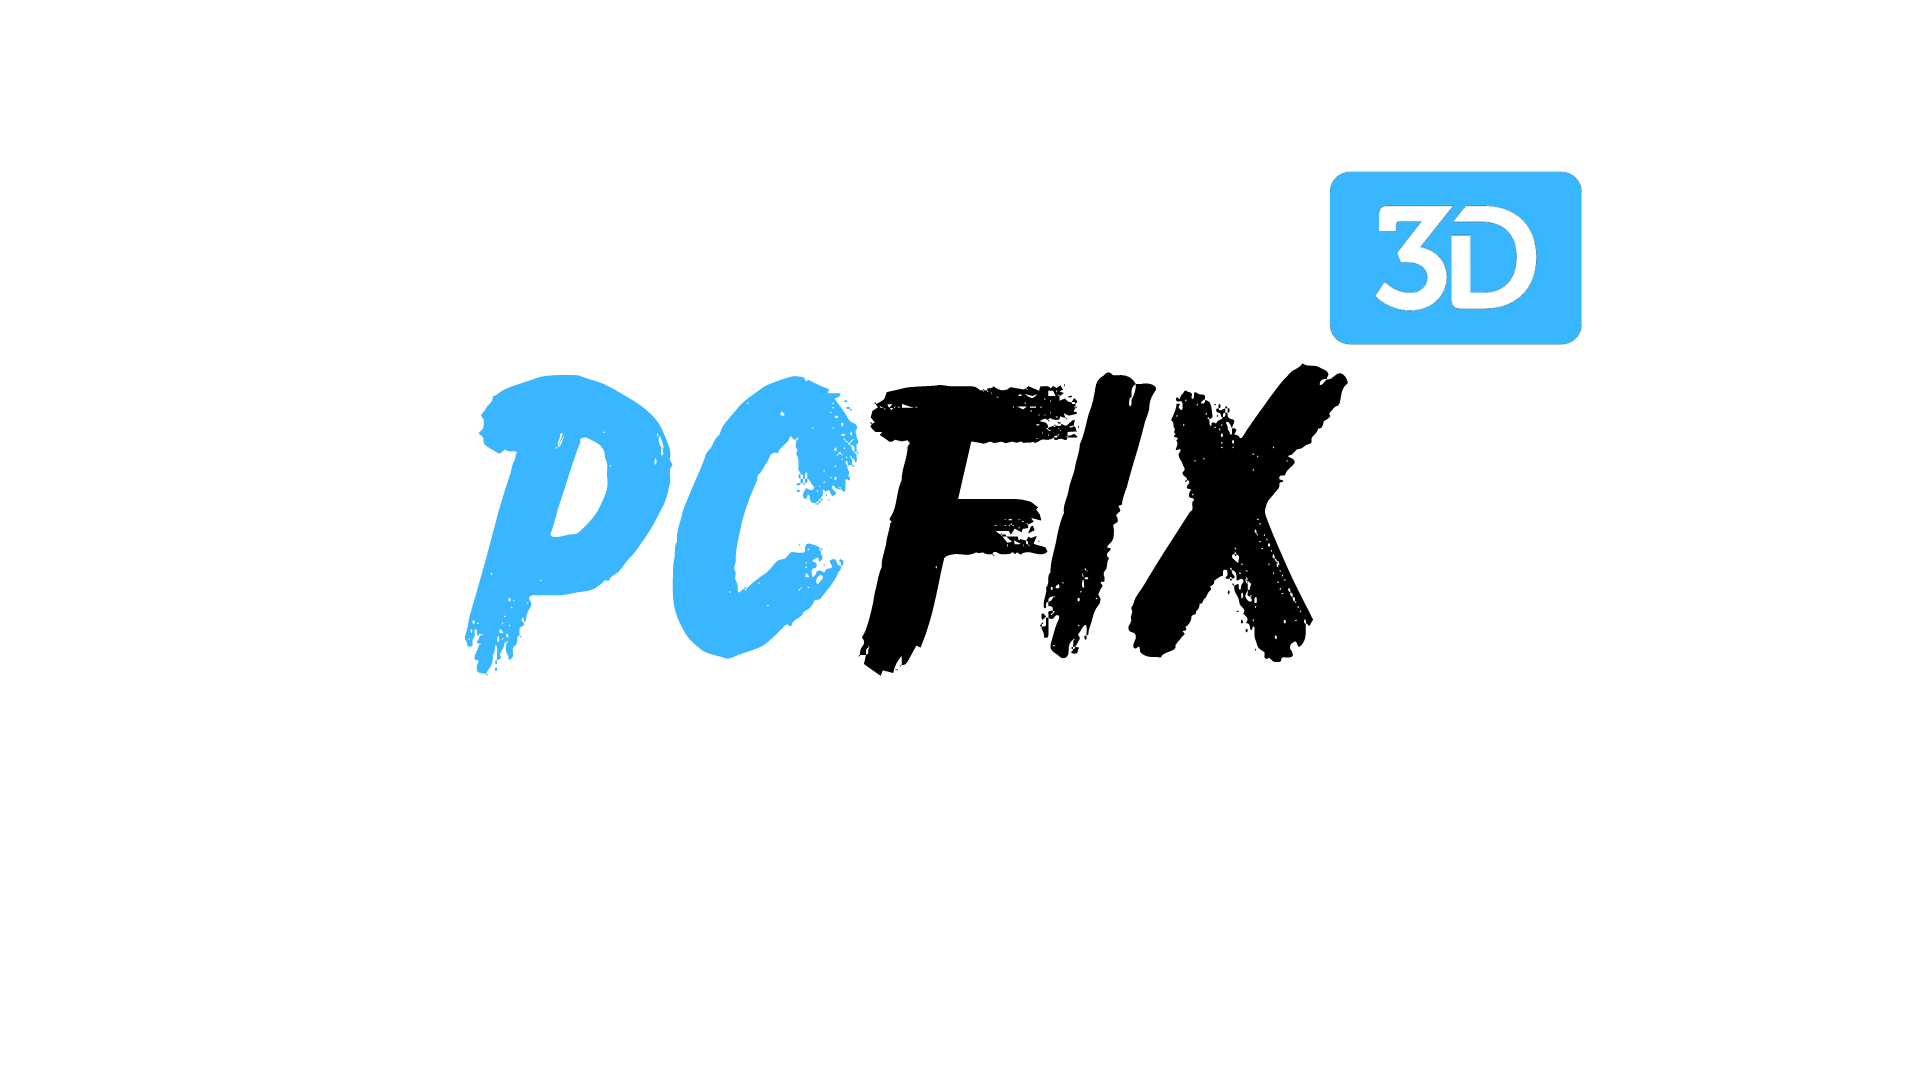 PCFIX3D